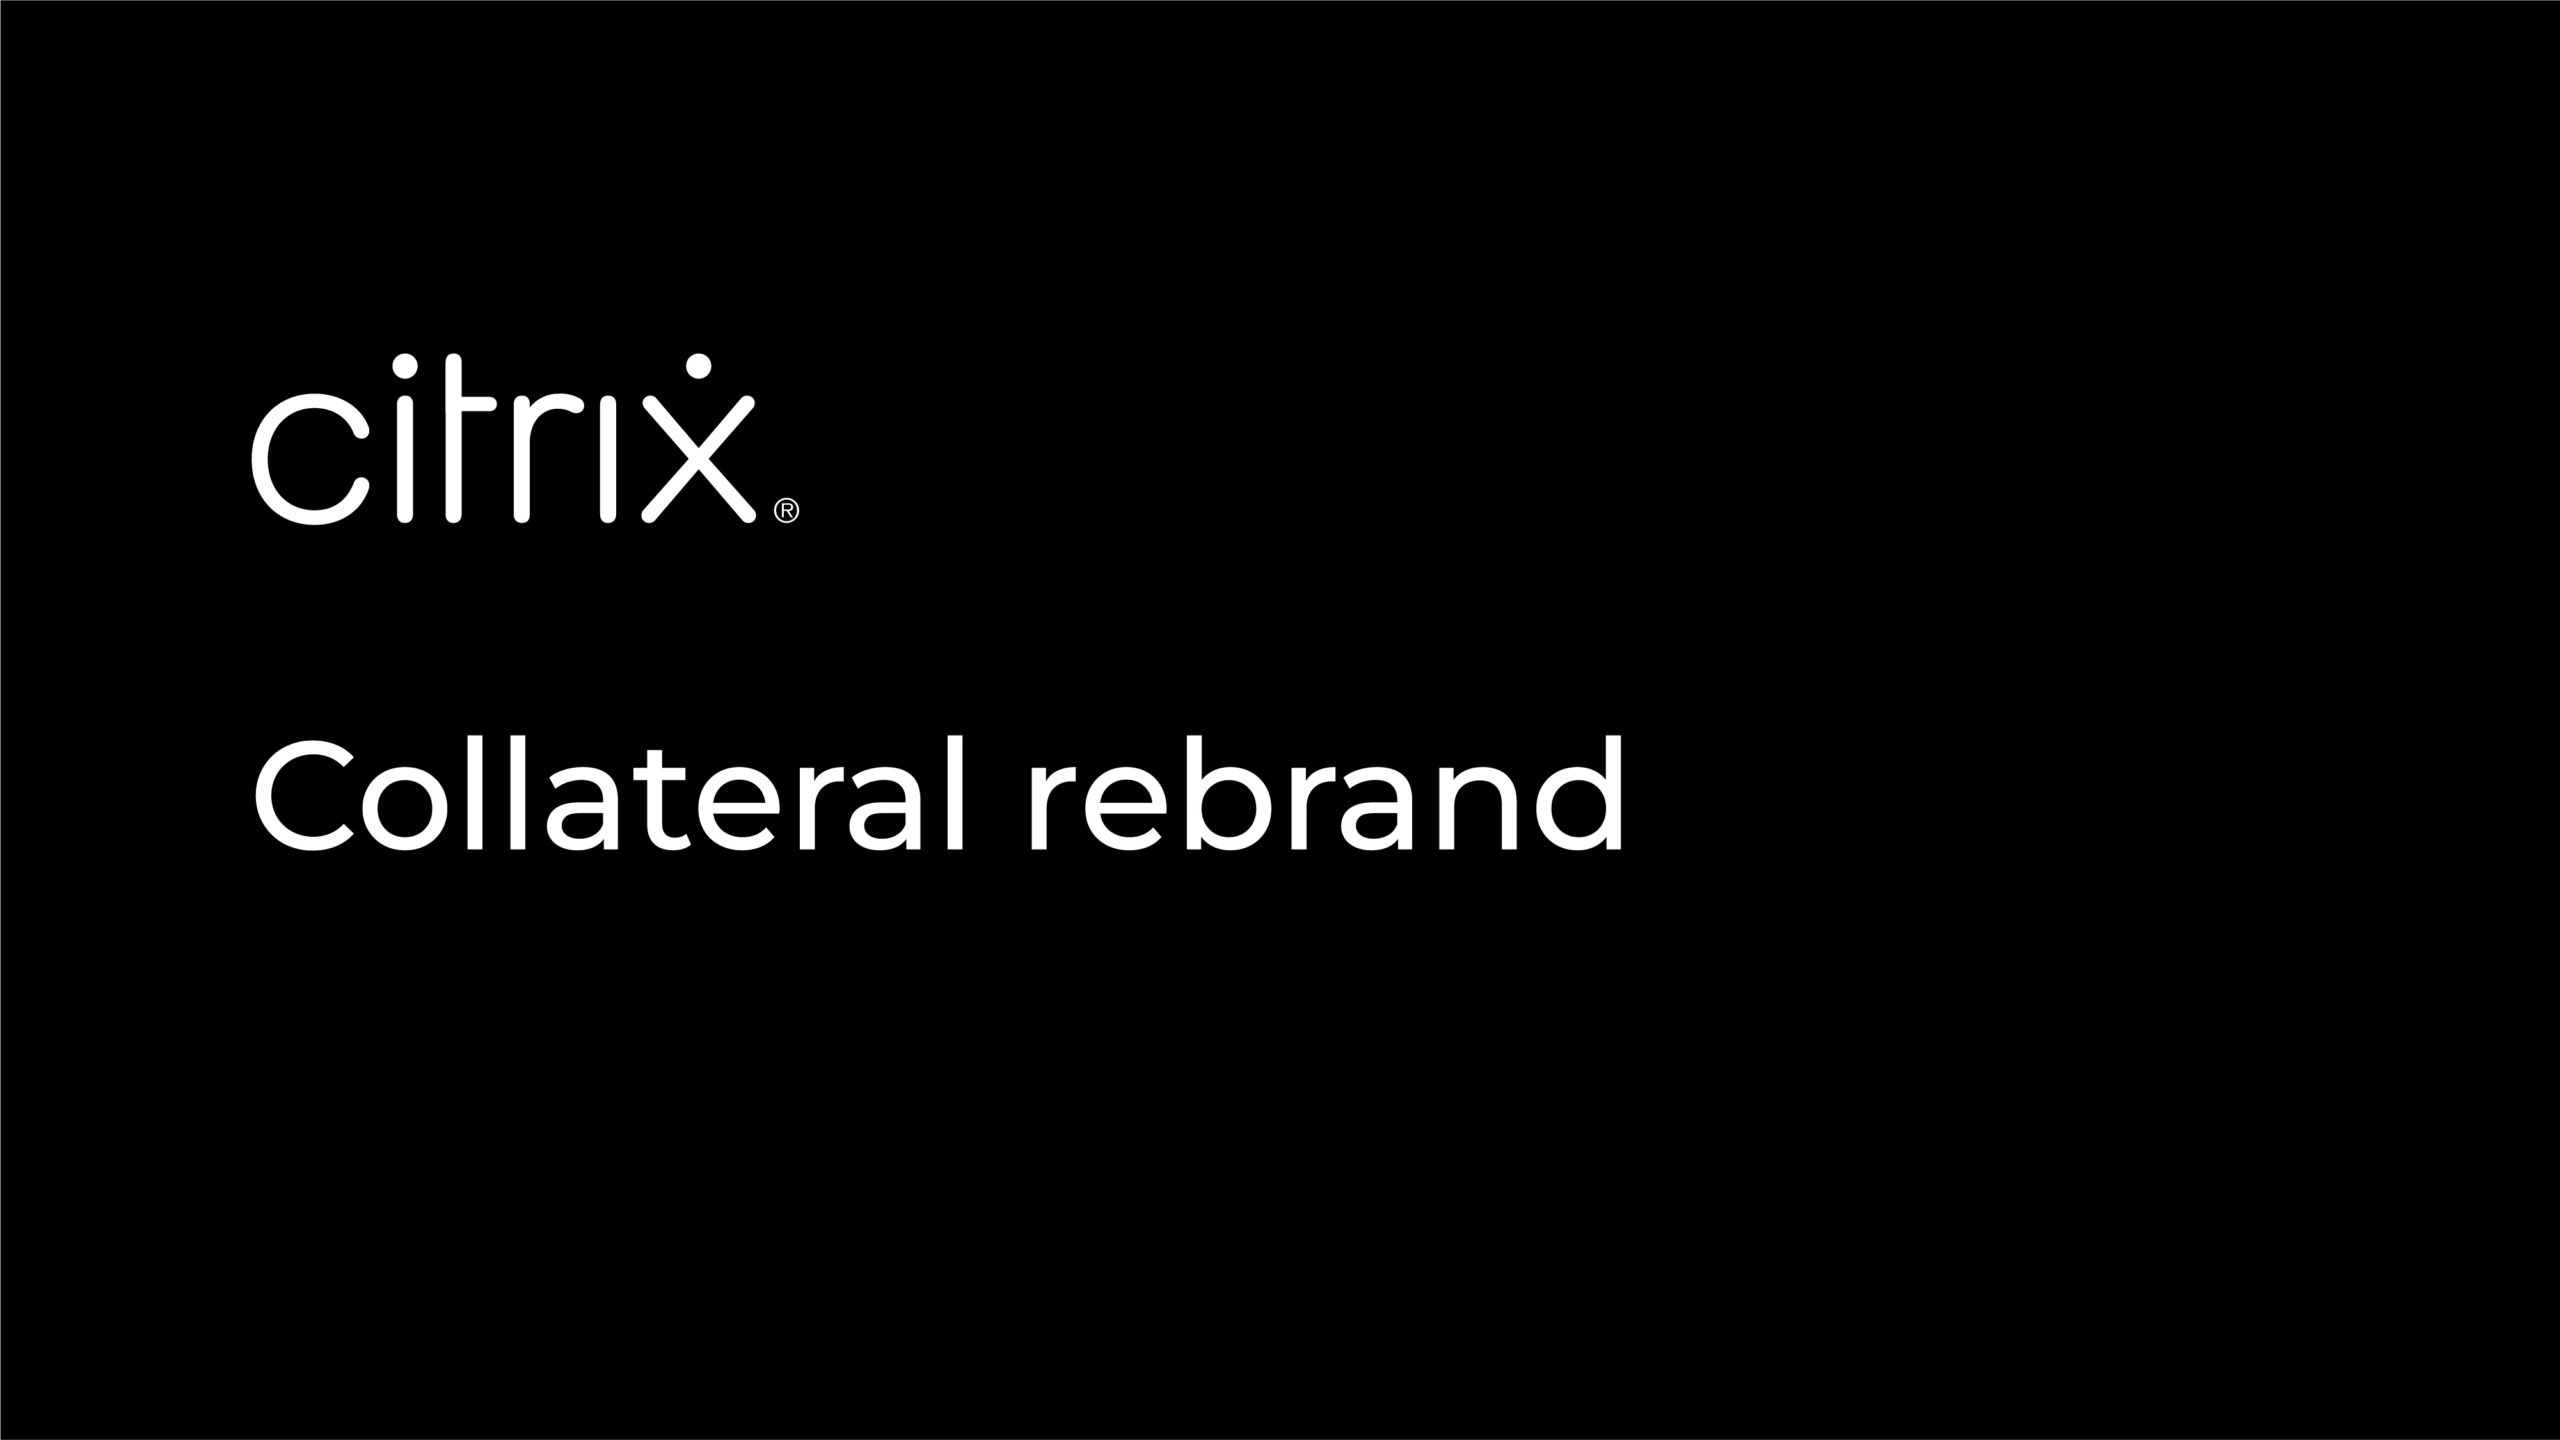 Citrix Collateral rebrand